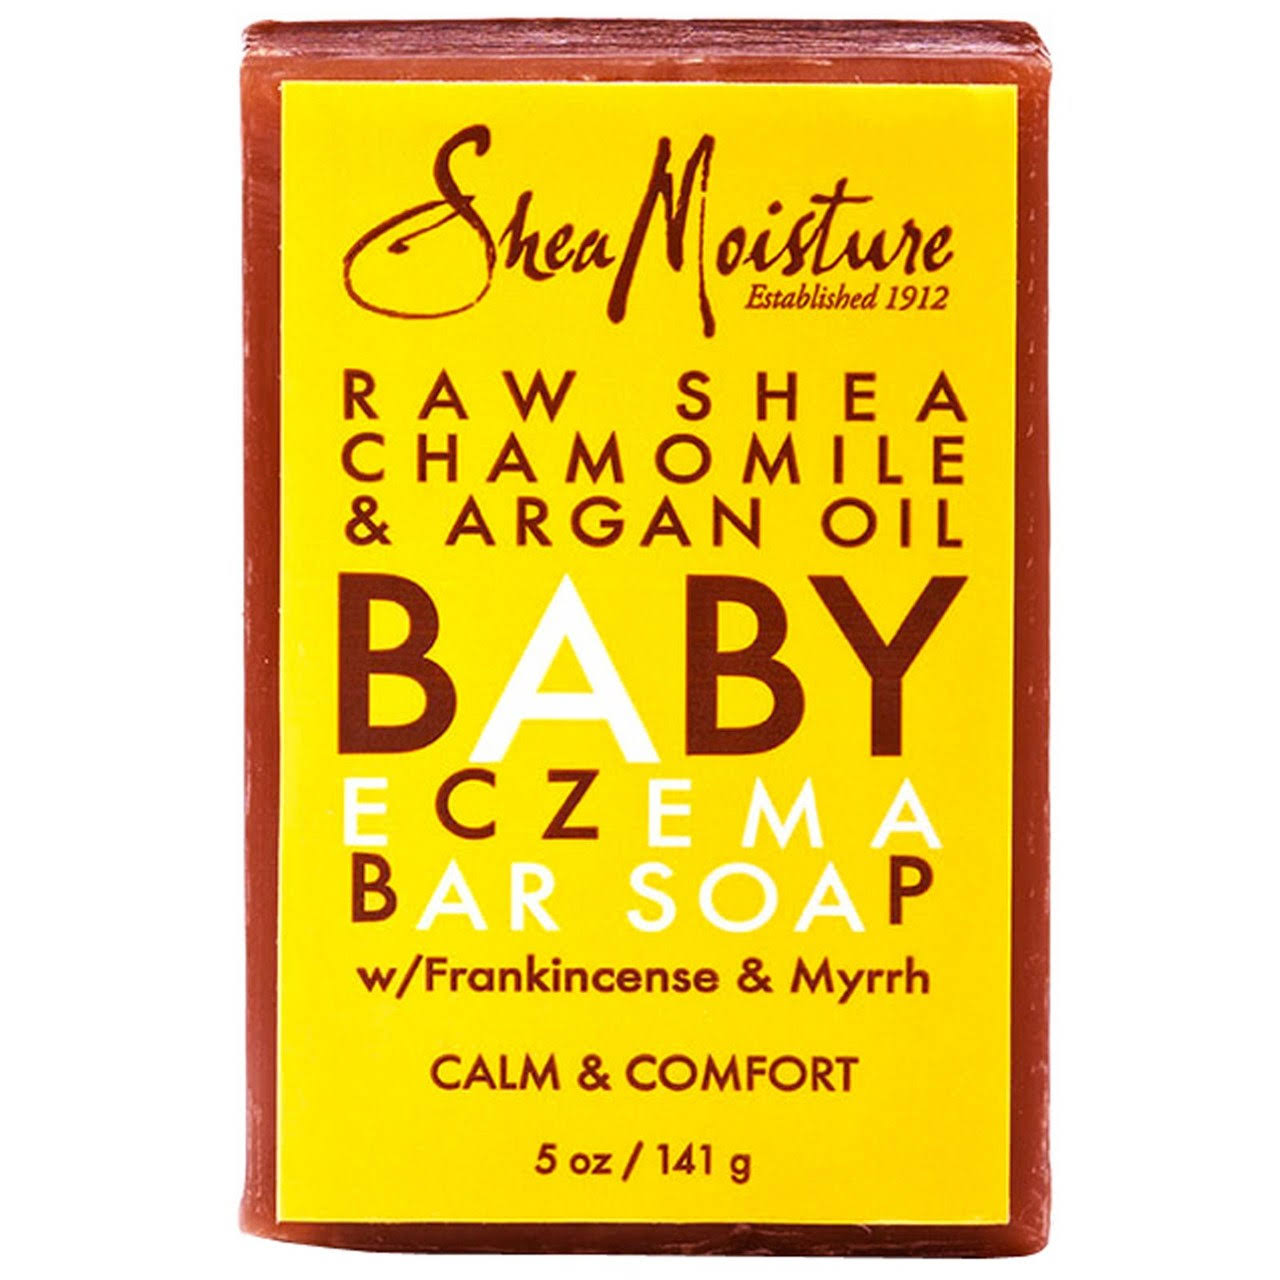 Shea Moisture Raw Shea Butter Baby Soap - 5oz